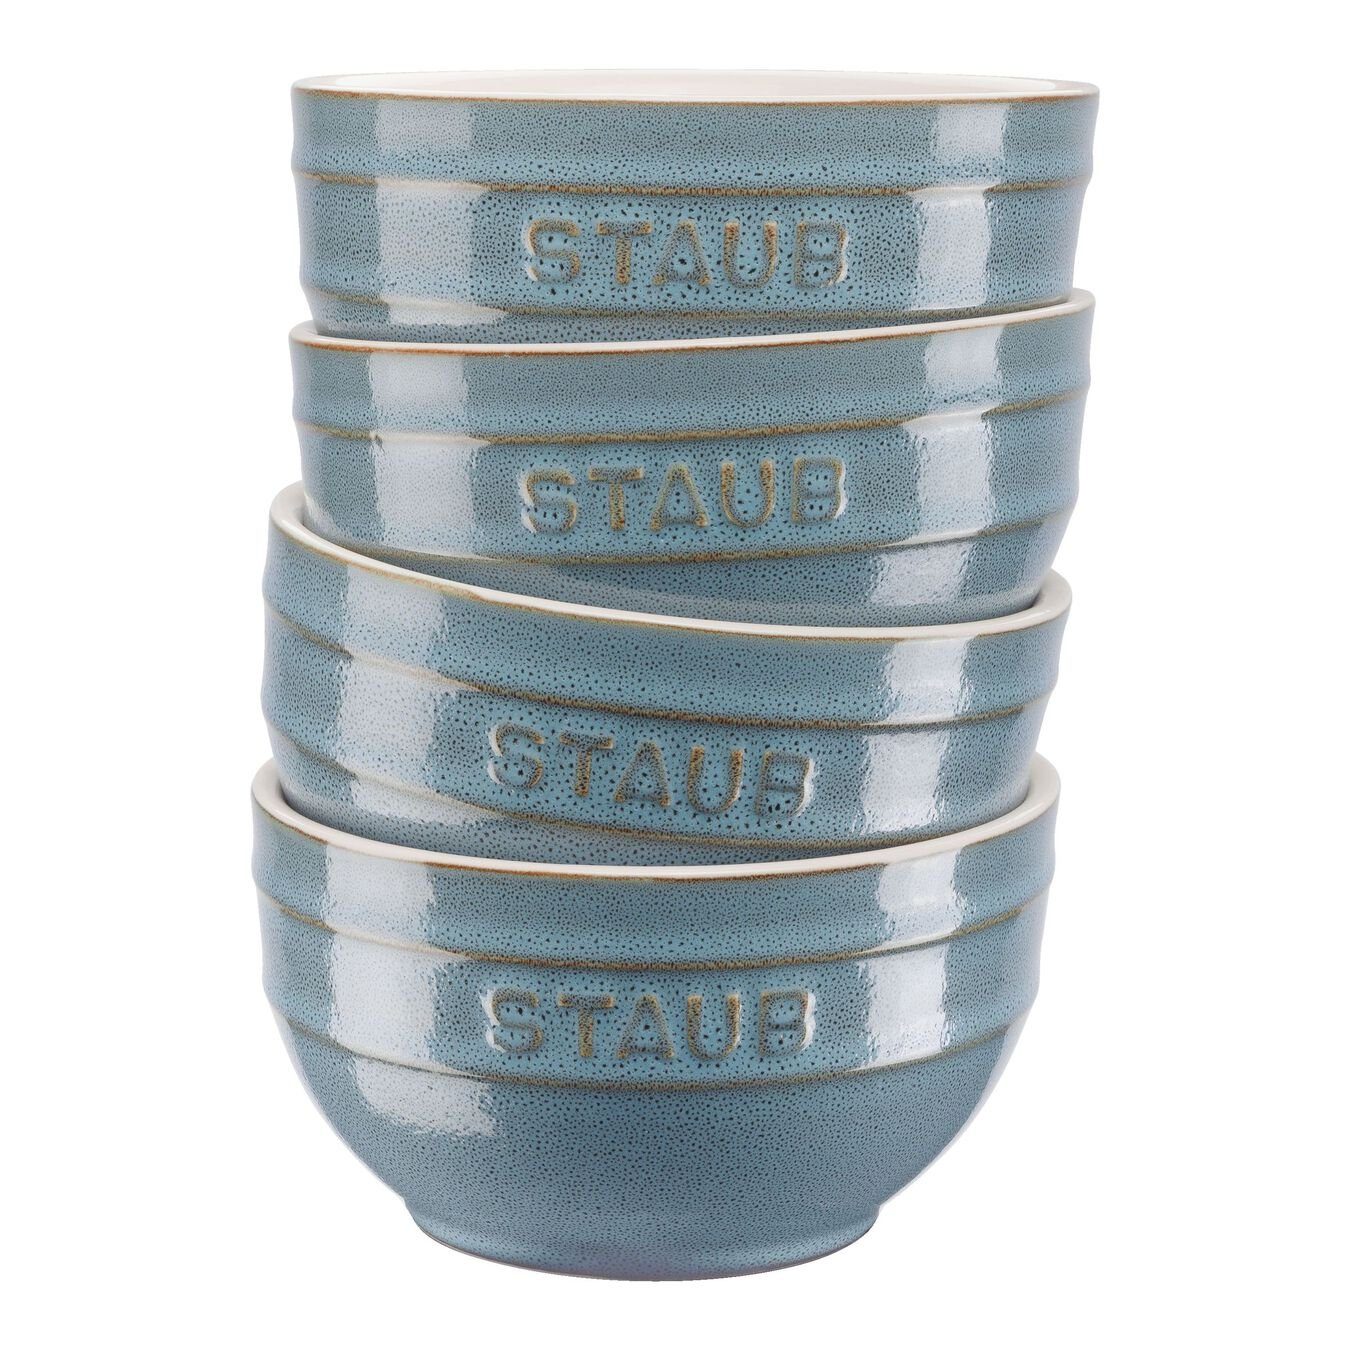 Ceramique cm Servieren, Staub 0,7 Liter und Staub Keramik, Schüssel Keramik Antik-Türkis 4-tlg 14 Zubereiten Schüsselset,Schüssel (4-tlg)